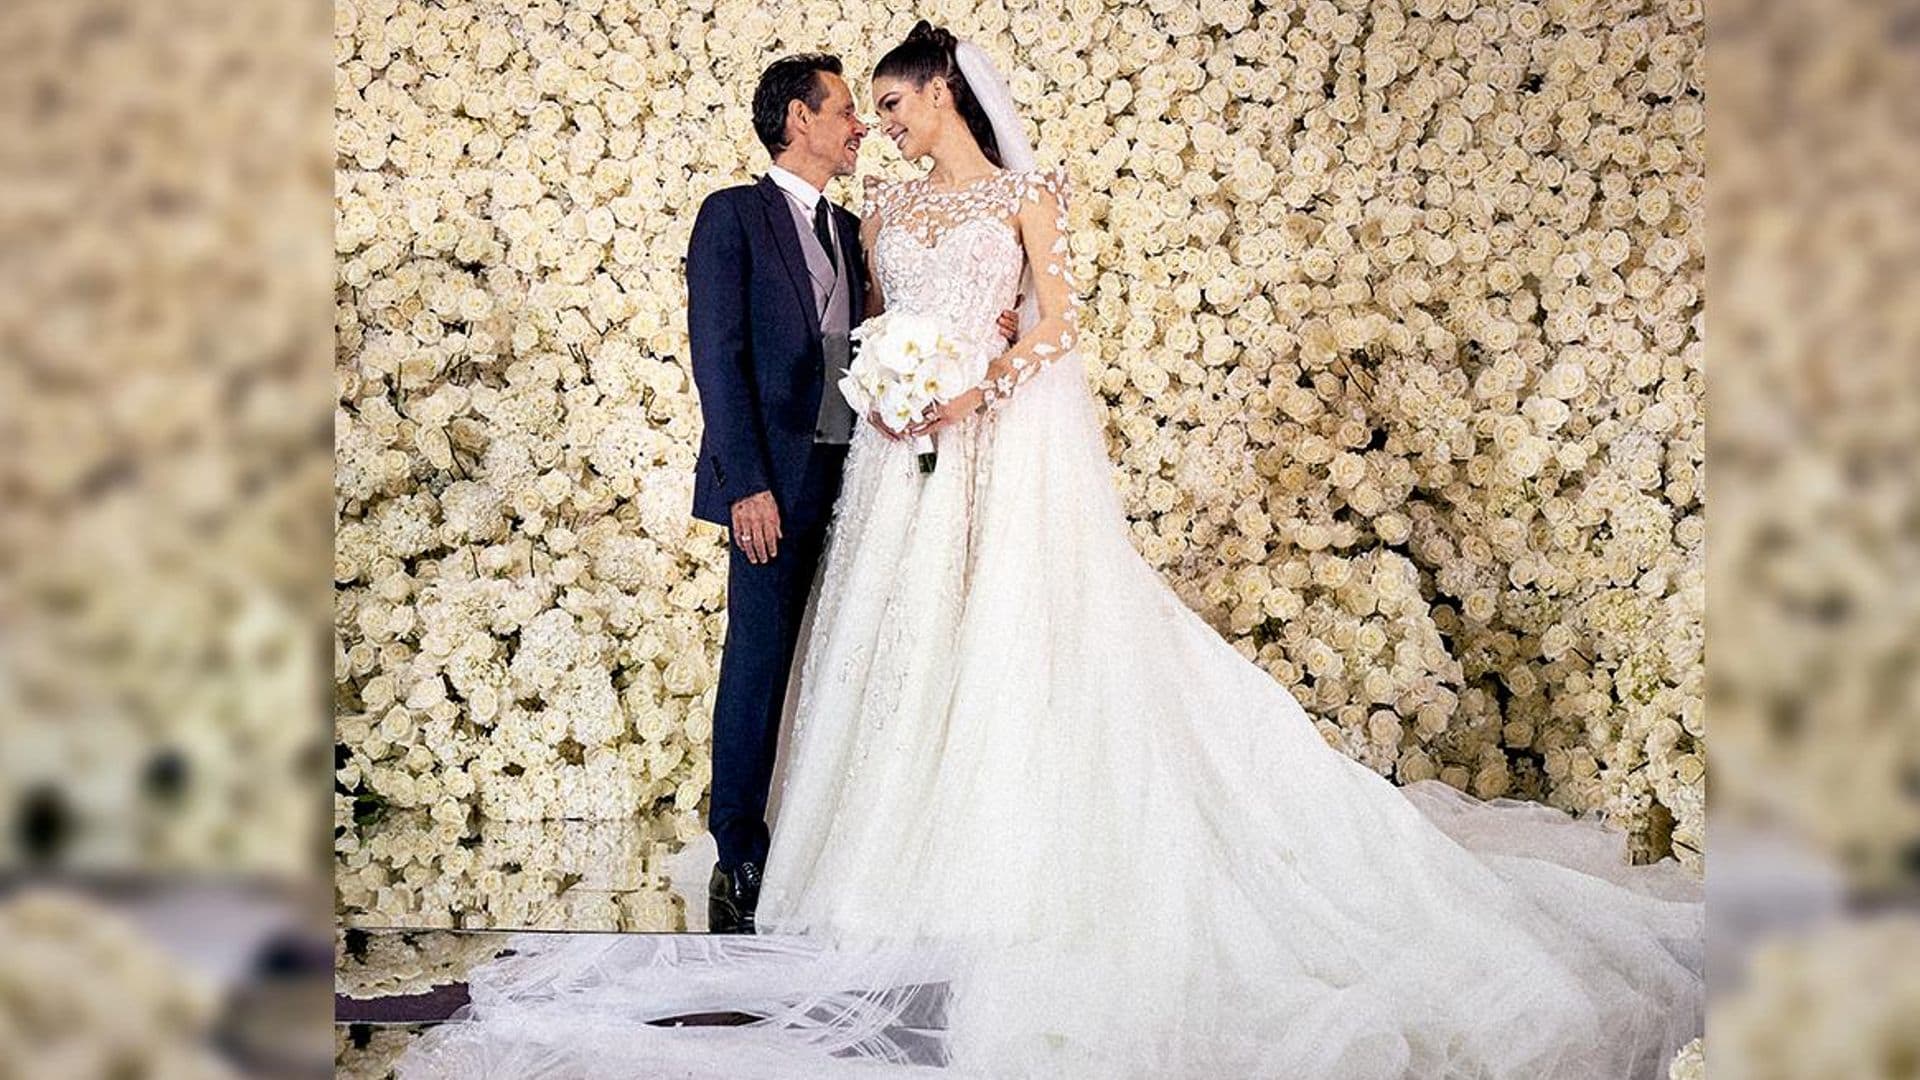 La boda de Marc Anthony y Nadia Ferreira: todas las imágenes, anécdotas y momentos más emocionantes